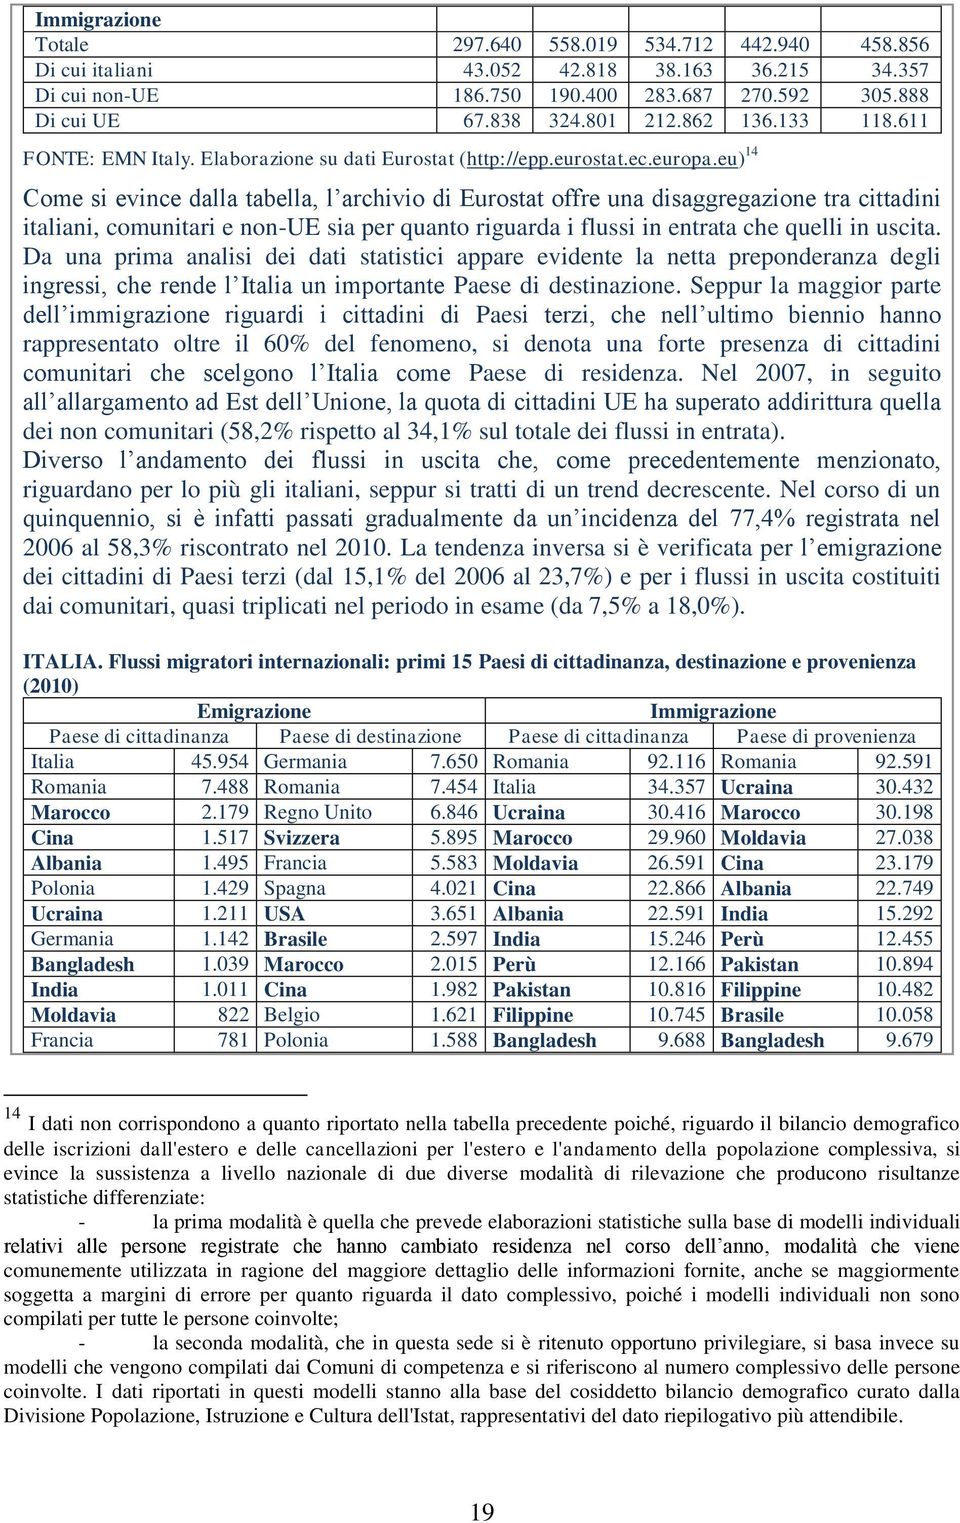 eu) 14 Come si evince dalla tabella, l archivio di Eurostat offre una disaggregazione tra cittadini italiani, comunitari e non-ue sia per quanto riguarda i flussi in entrata che quelli in uscita.